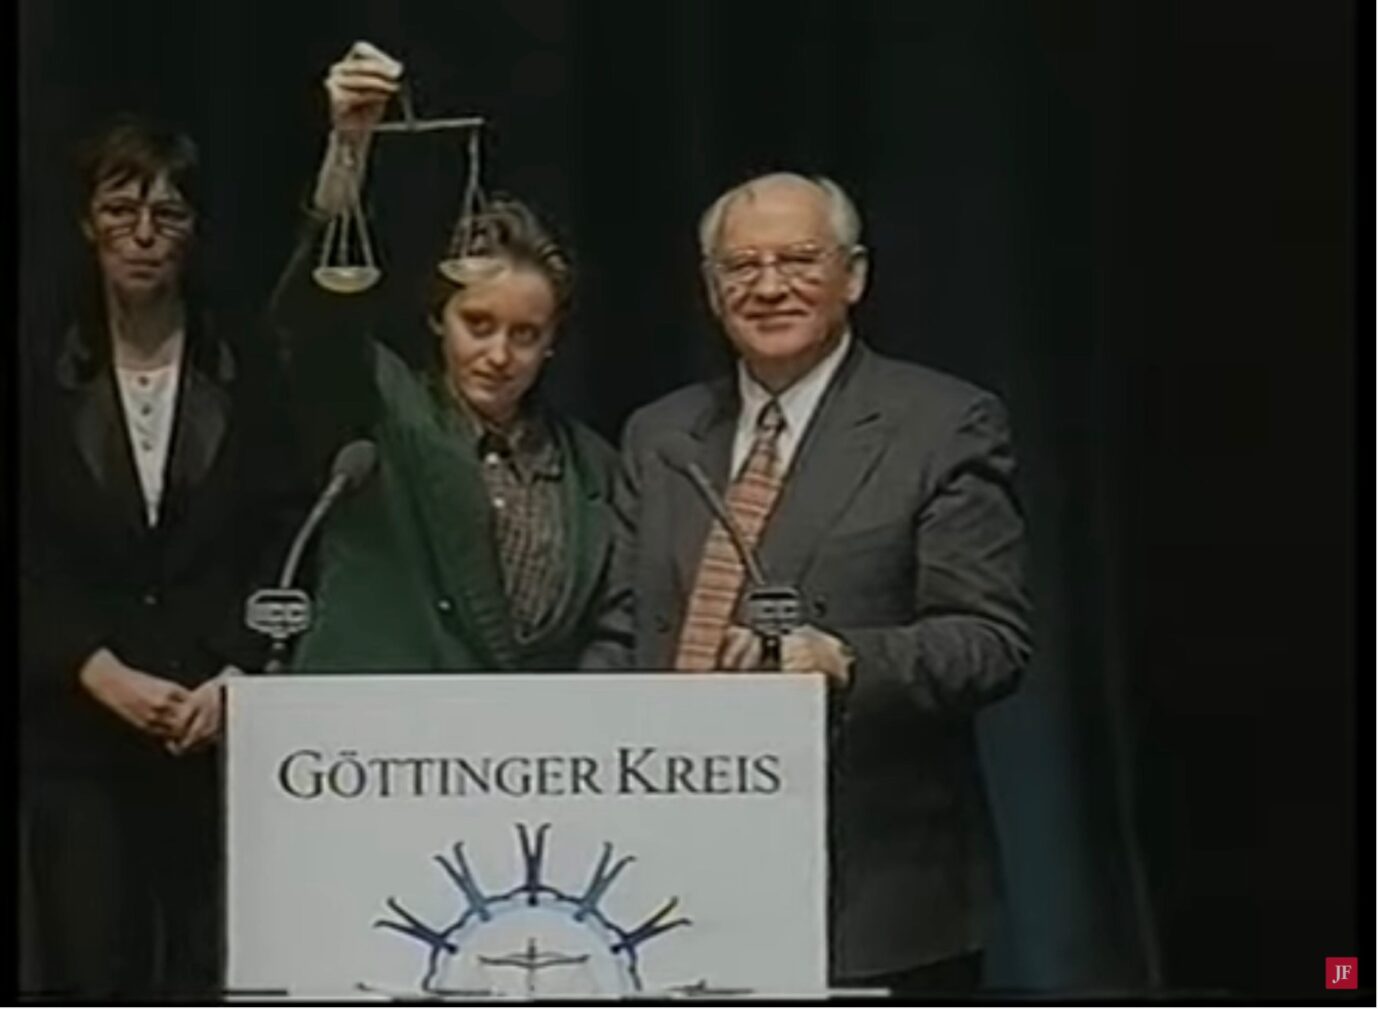 Michail Gorbatschow spricht am 1. März 1998 bei der Veranstaltung der „Studenten für den Rechtsstaat“ im ICC Berlin. Beatrix von Storch überreicht ihm als Dank eine Waage als Symbol der Rechtsstaatlichkeit Foto: Youtube / Screenshot JF